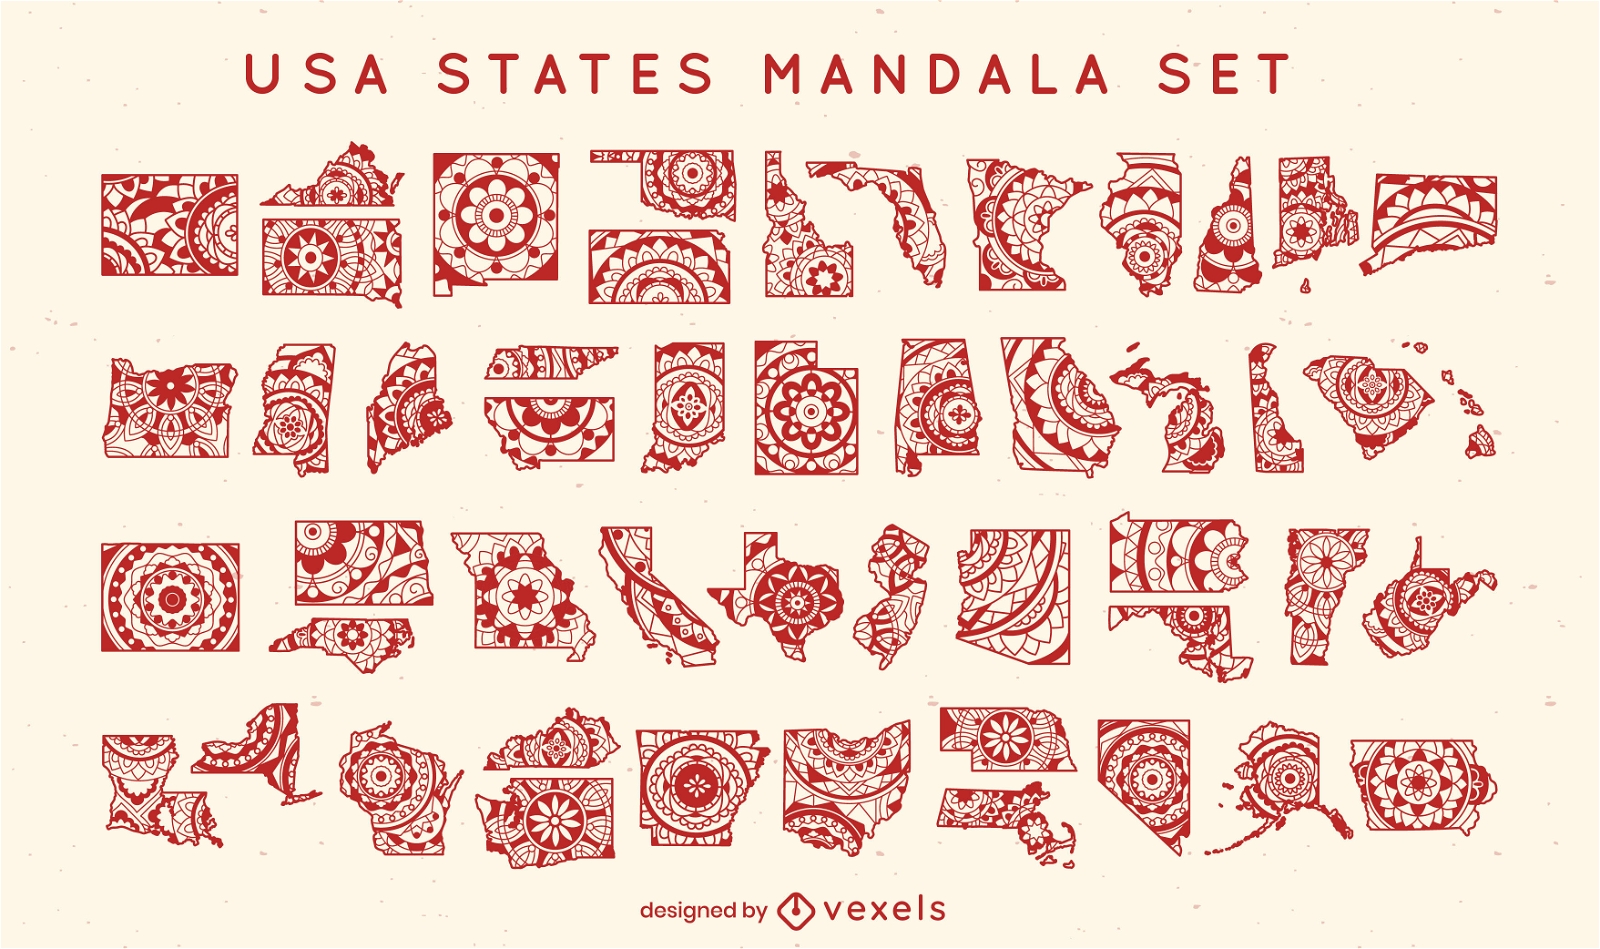 States of the US mandala set